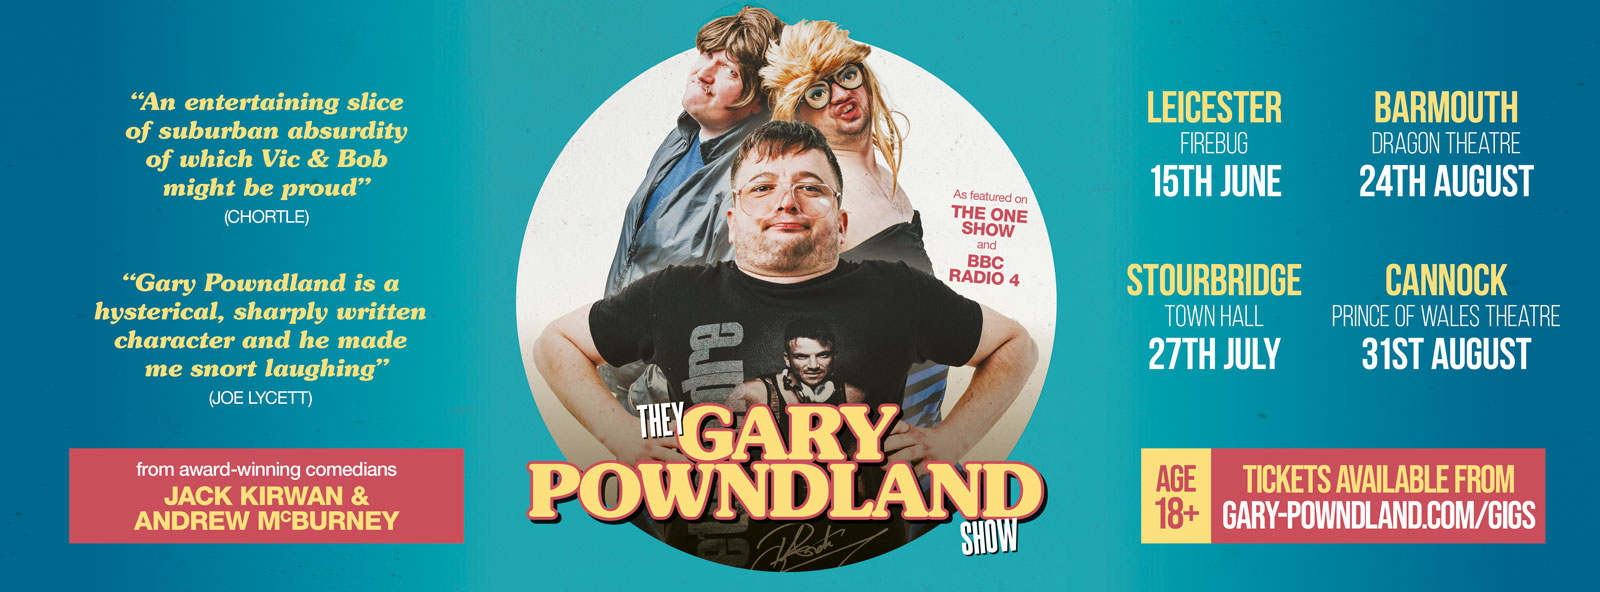 They Gary Powndland Show